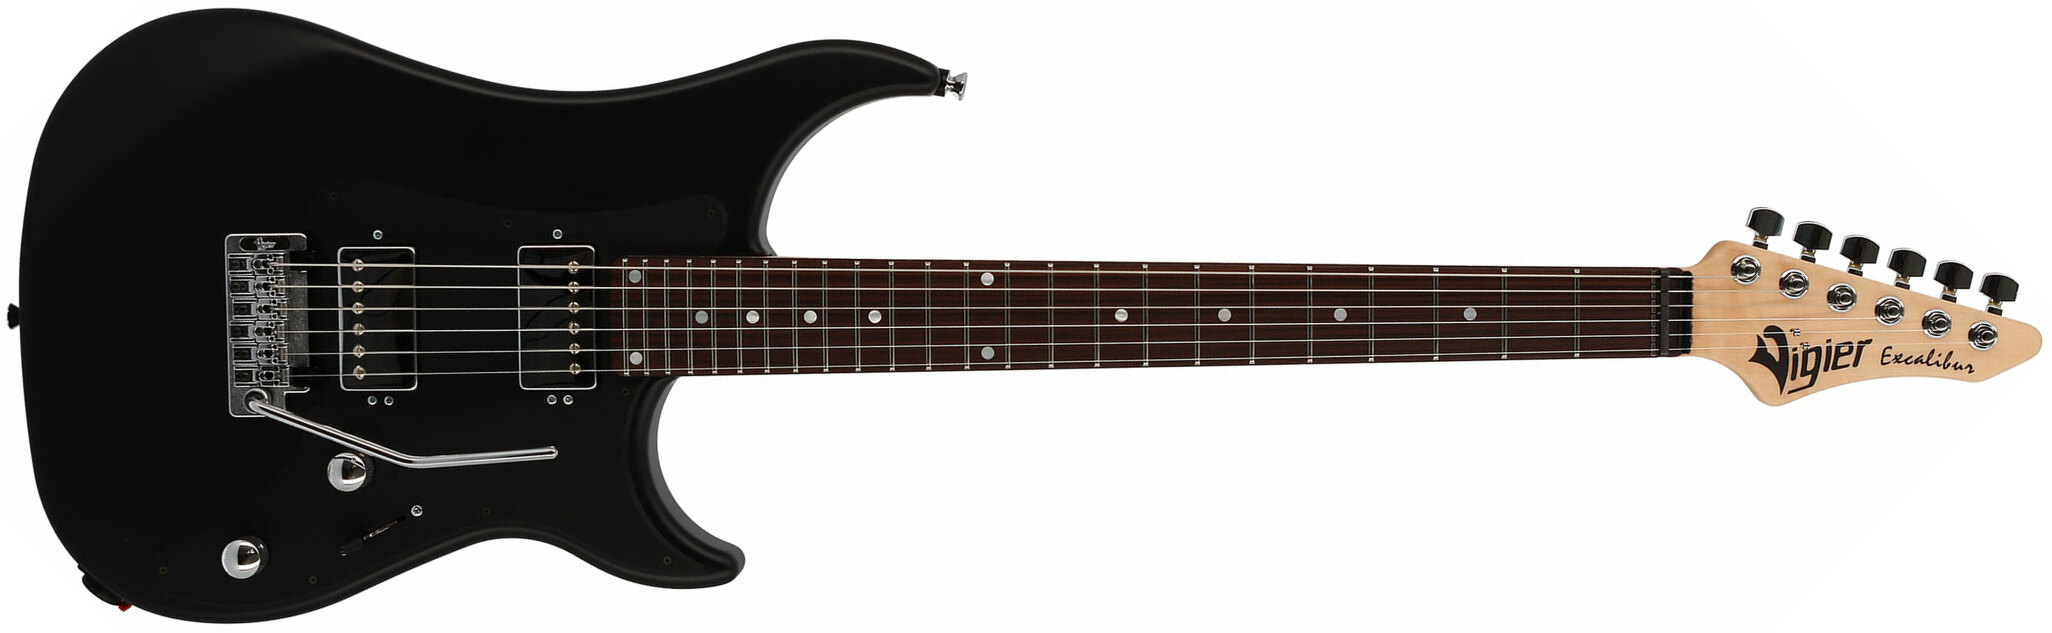 Vigier Excalibur Indus 2h Trem Rw - Black Matte - Double cut electric guitar - Main picture